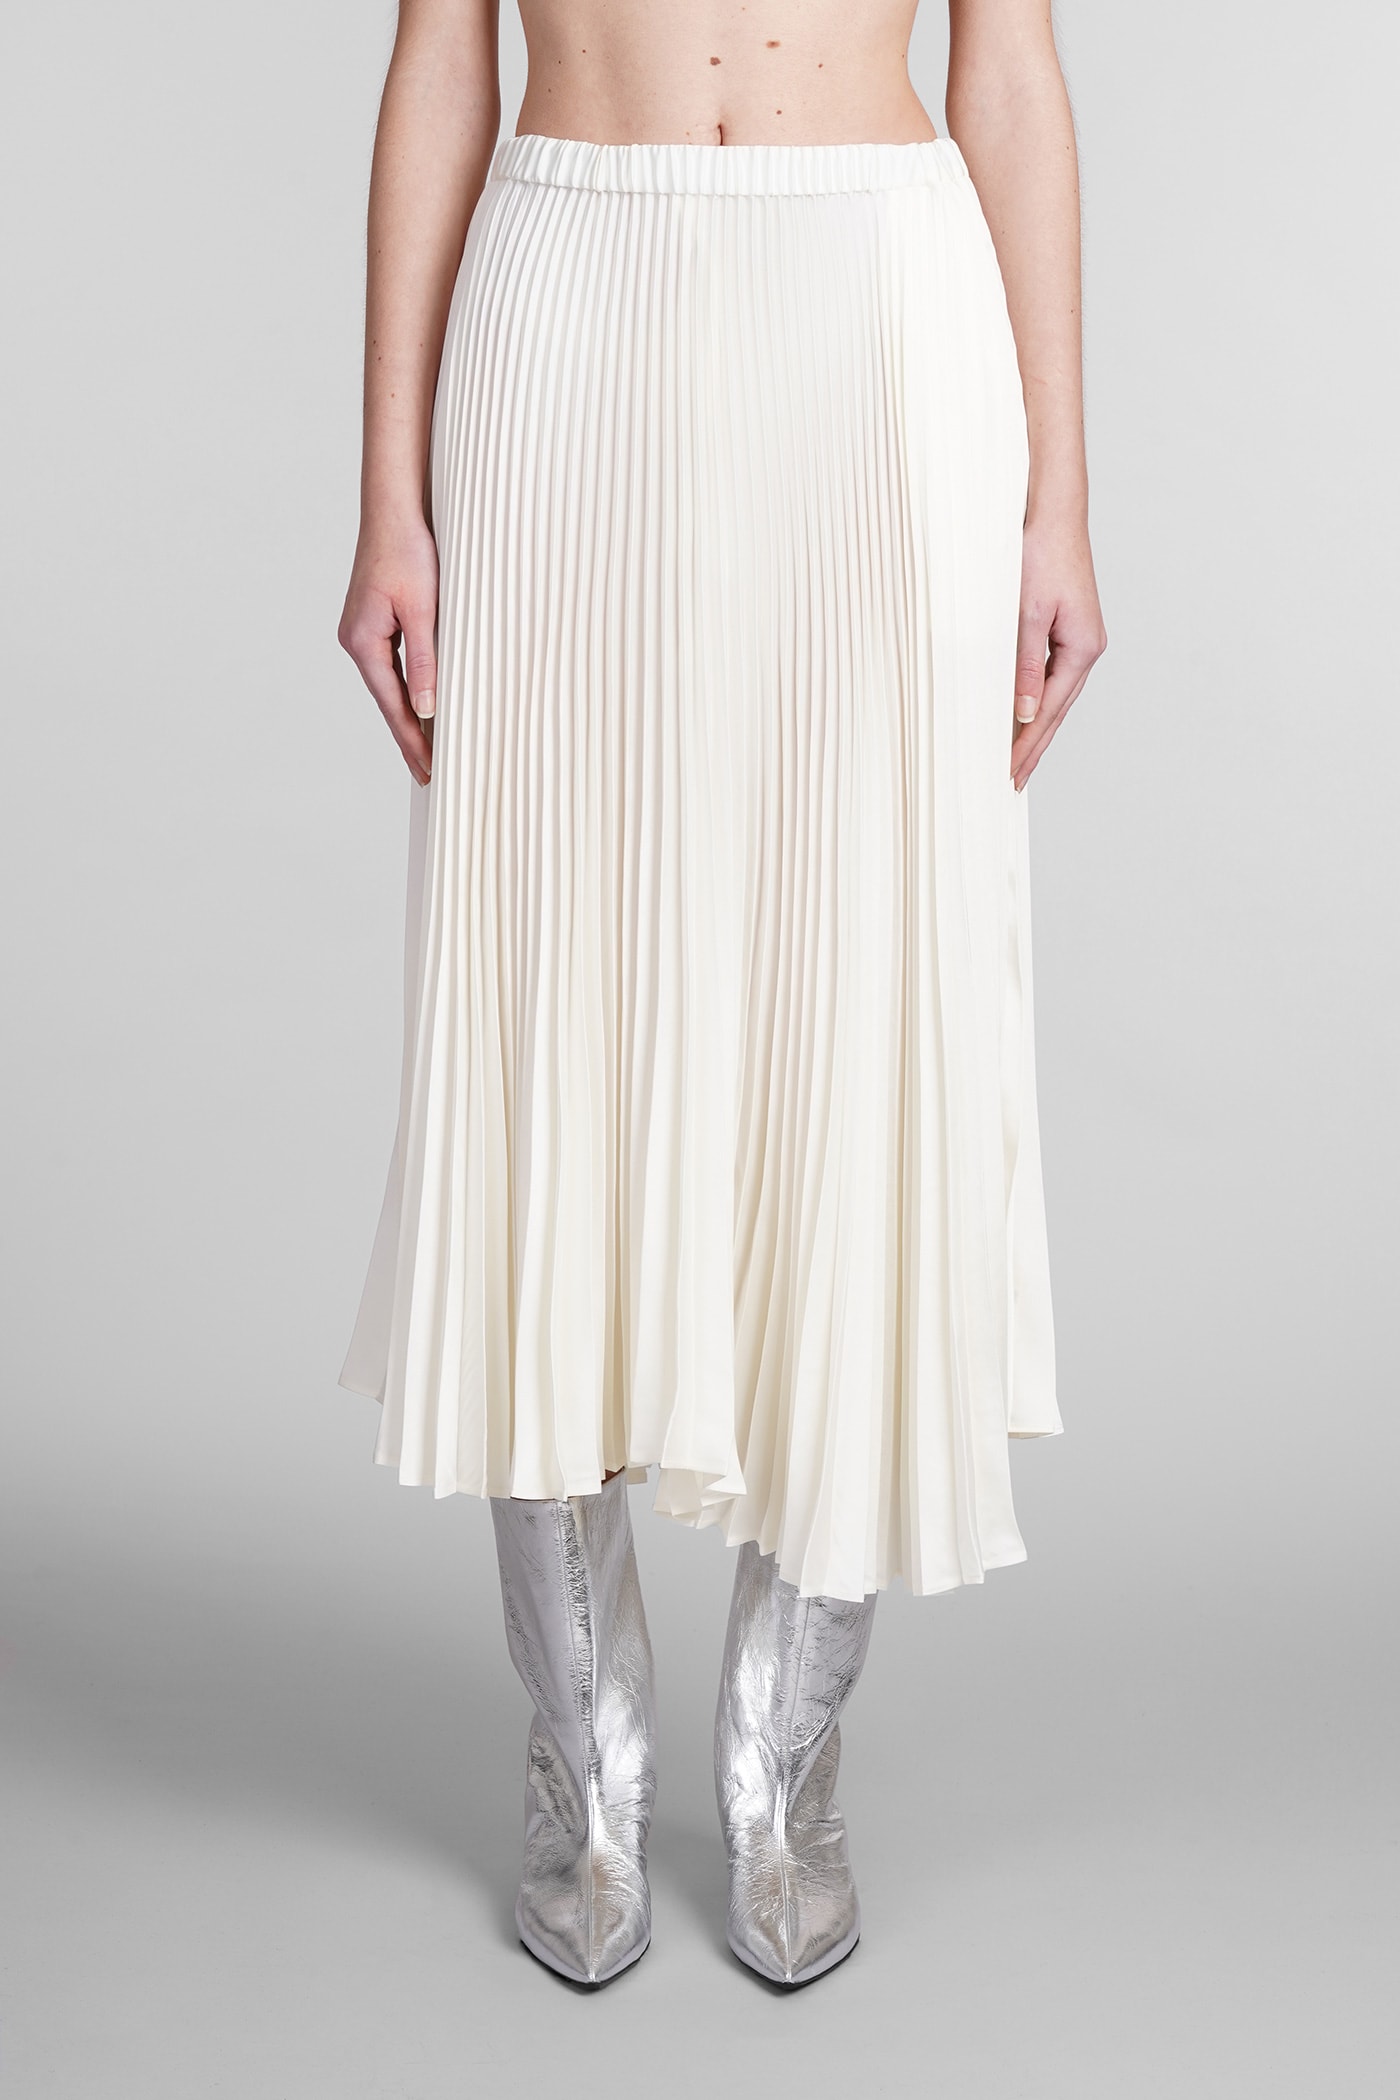 Jil Sander Skirt In White Polyester